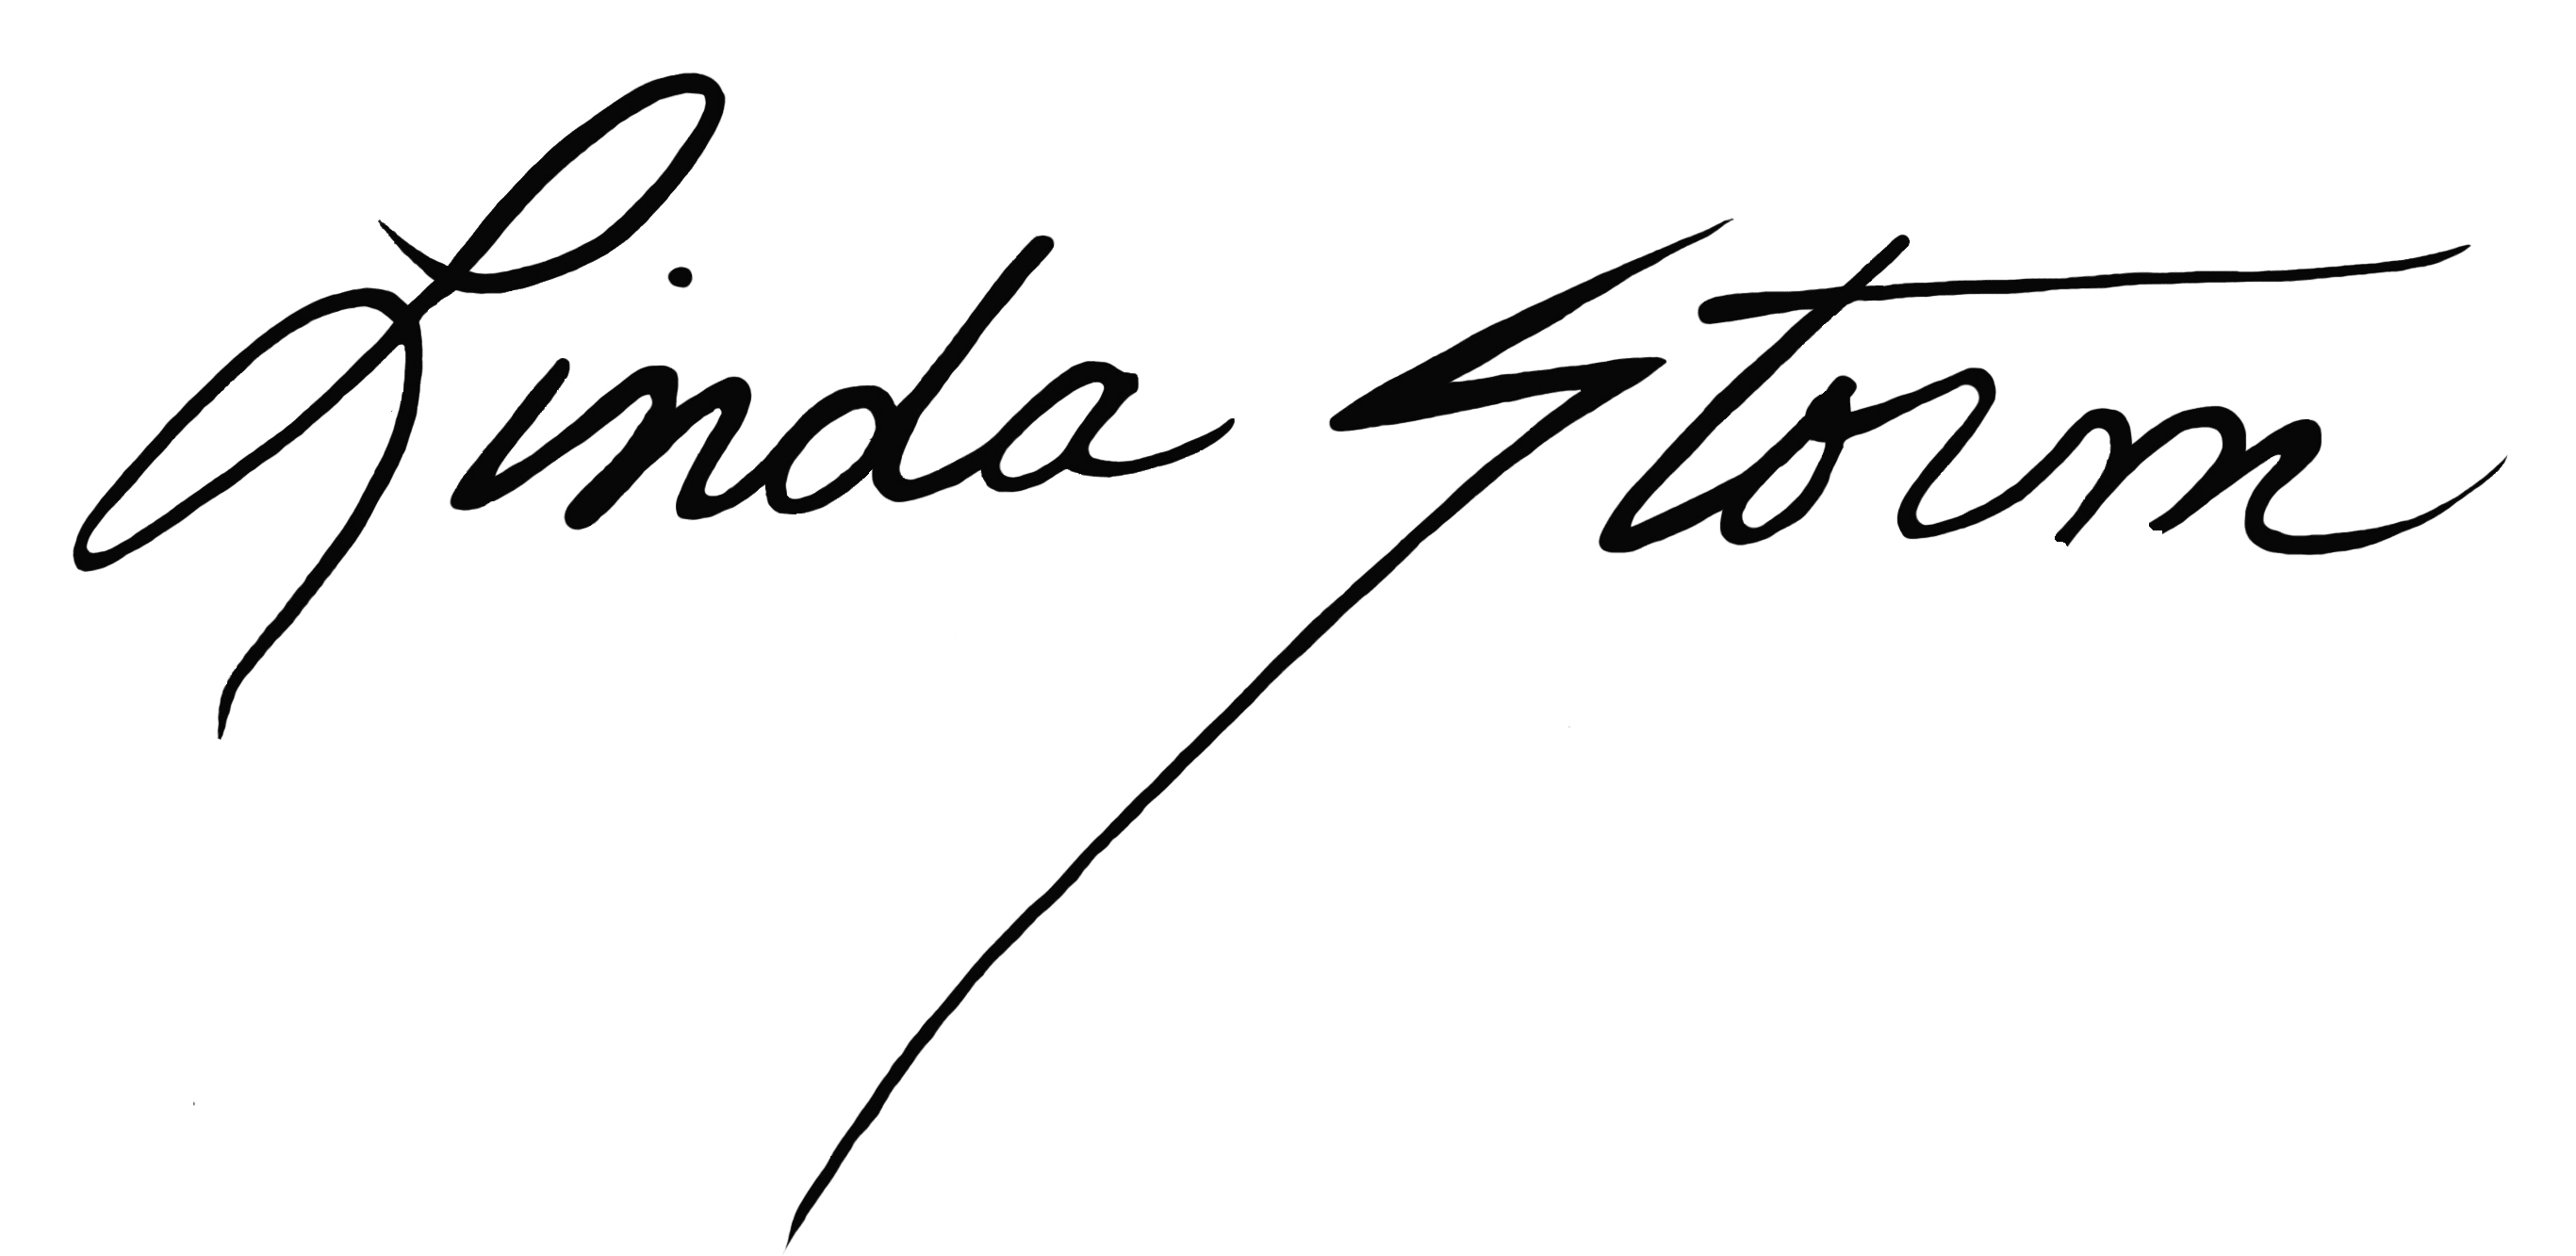 Linda Storm Art